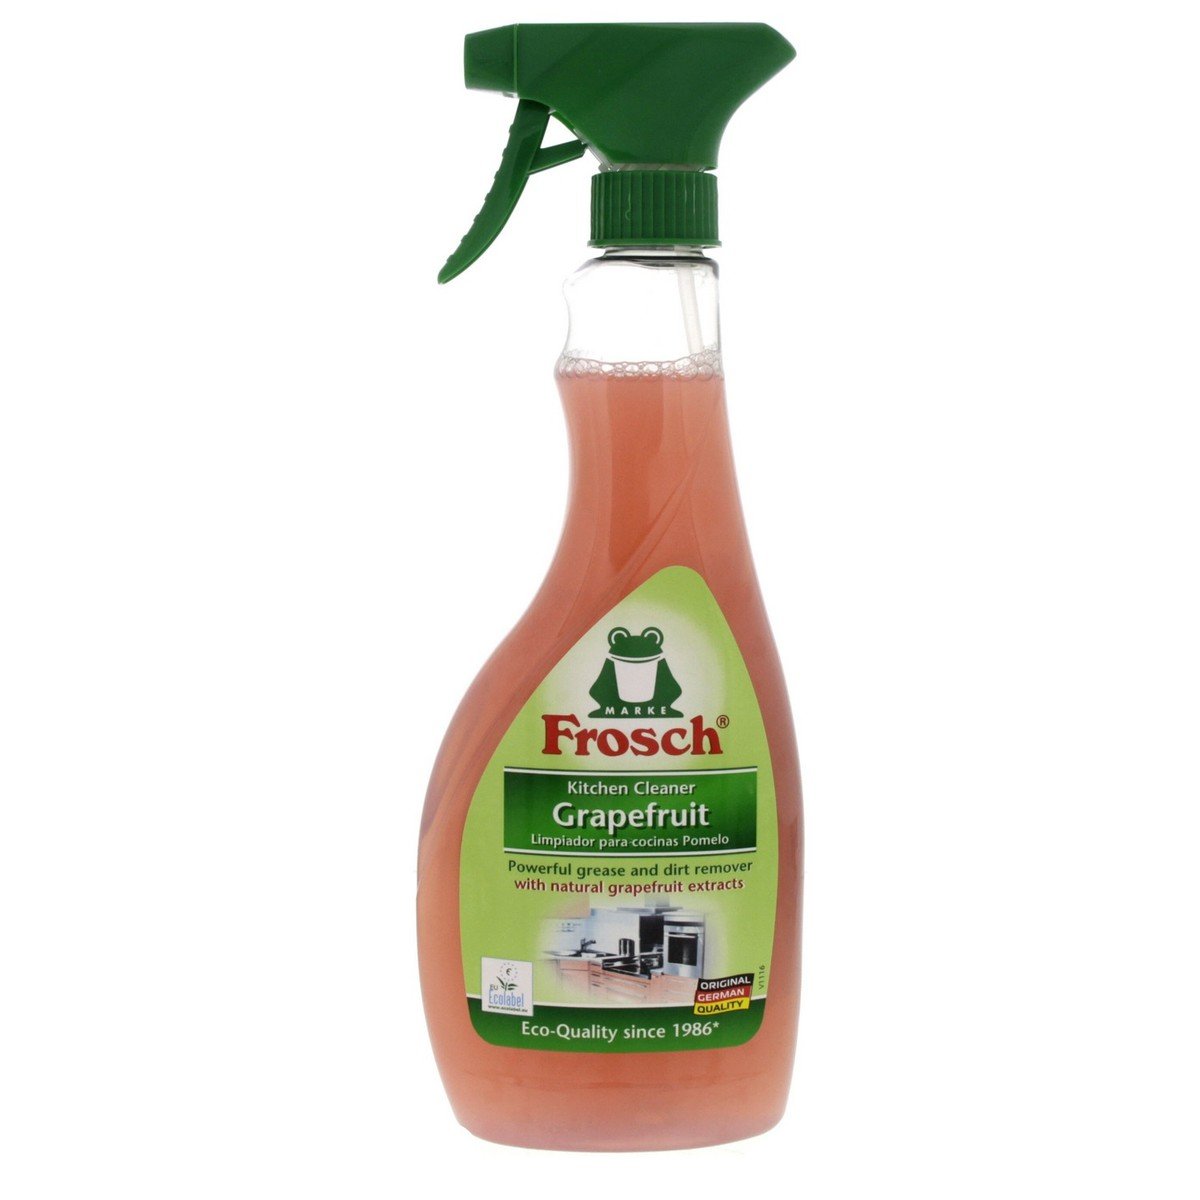 Marke Frosch Kitchen Cleaner Grapefruit Limpiador Para Cocinas Pomelo 500ml